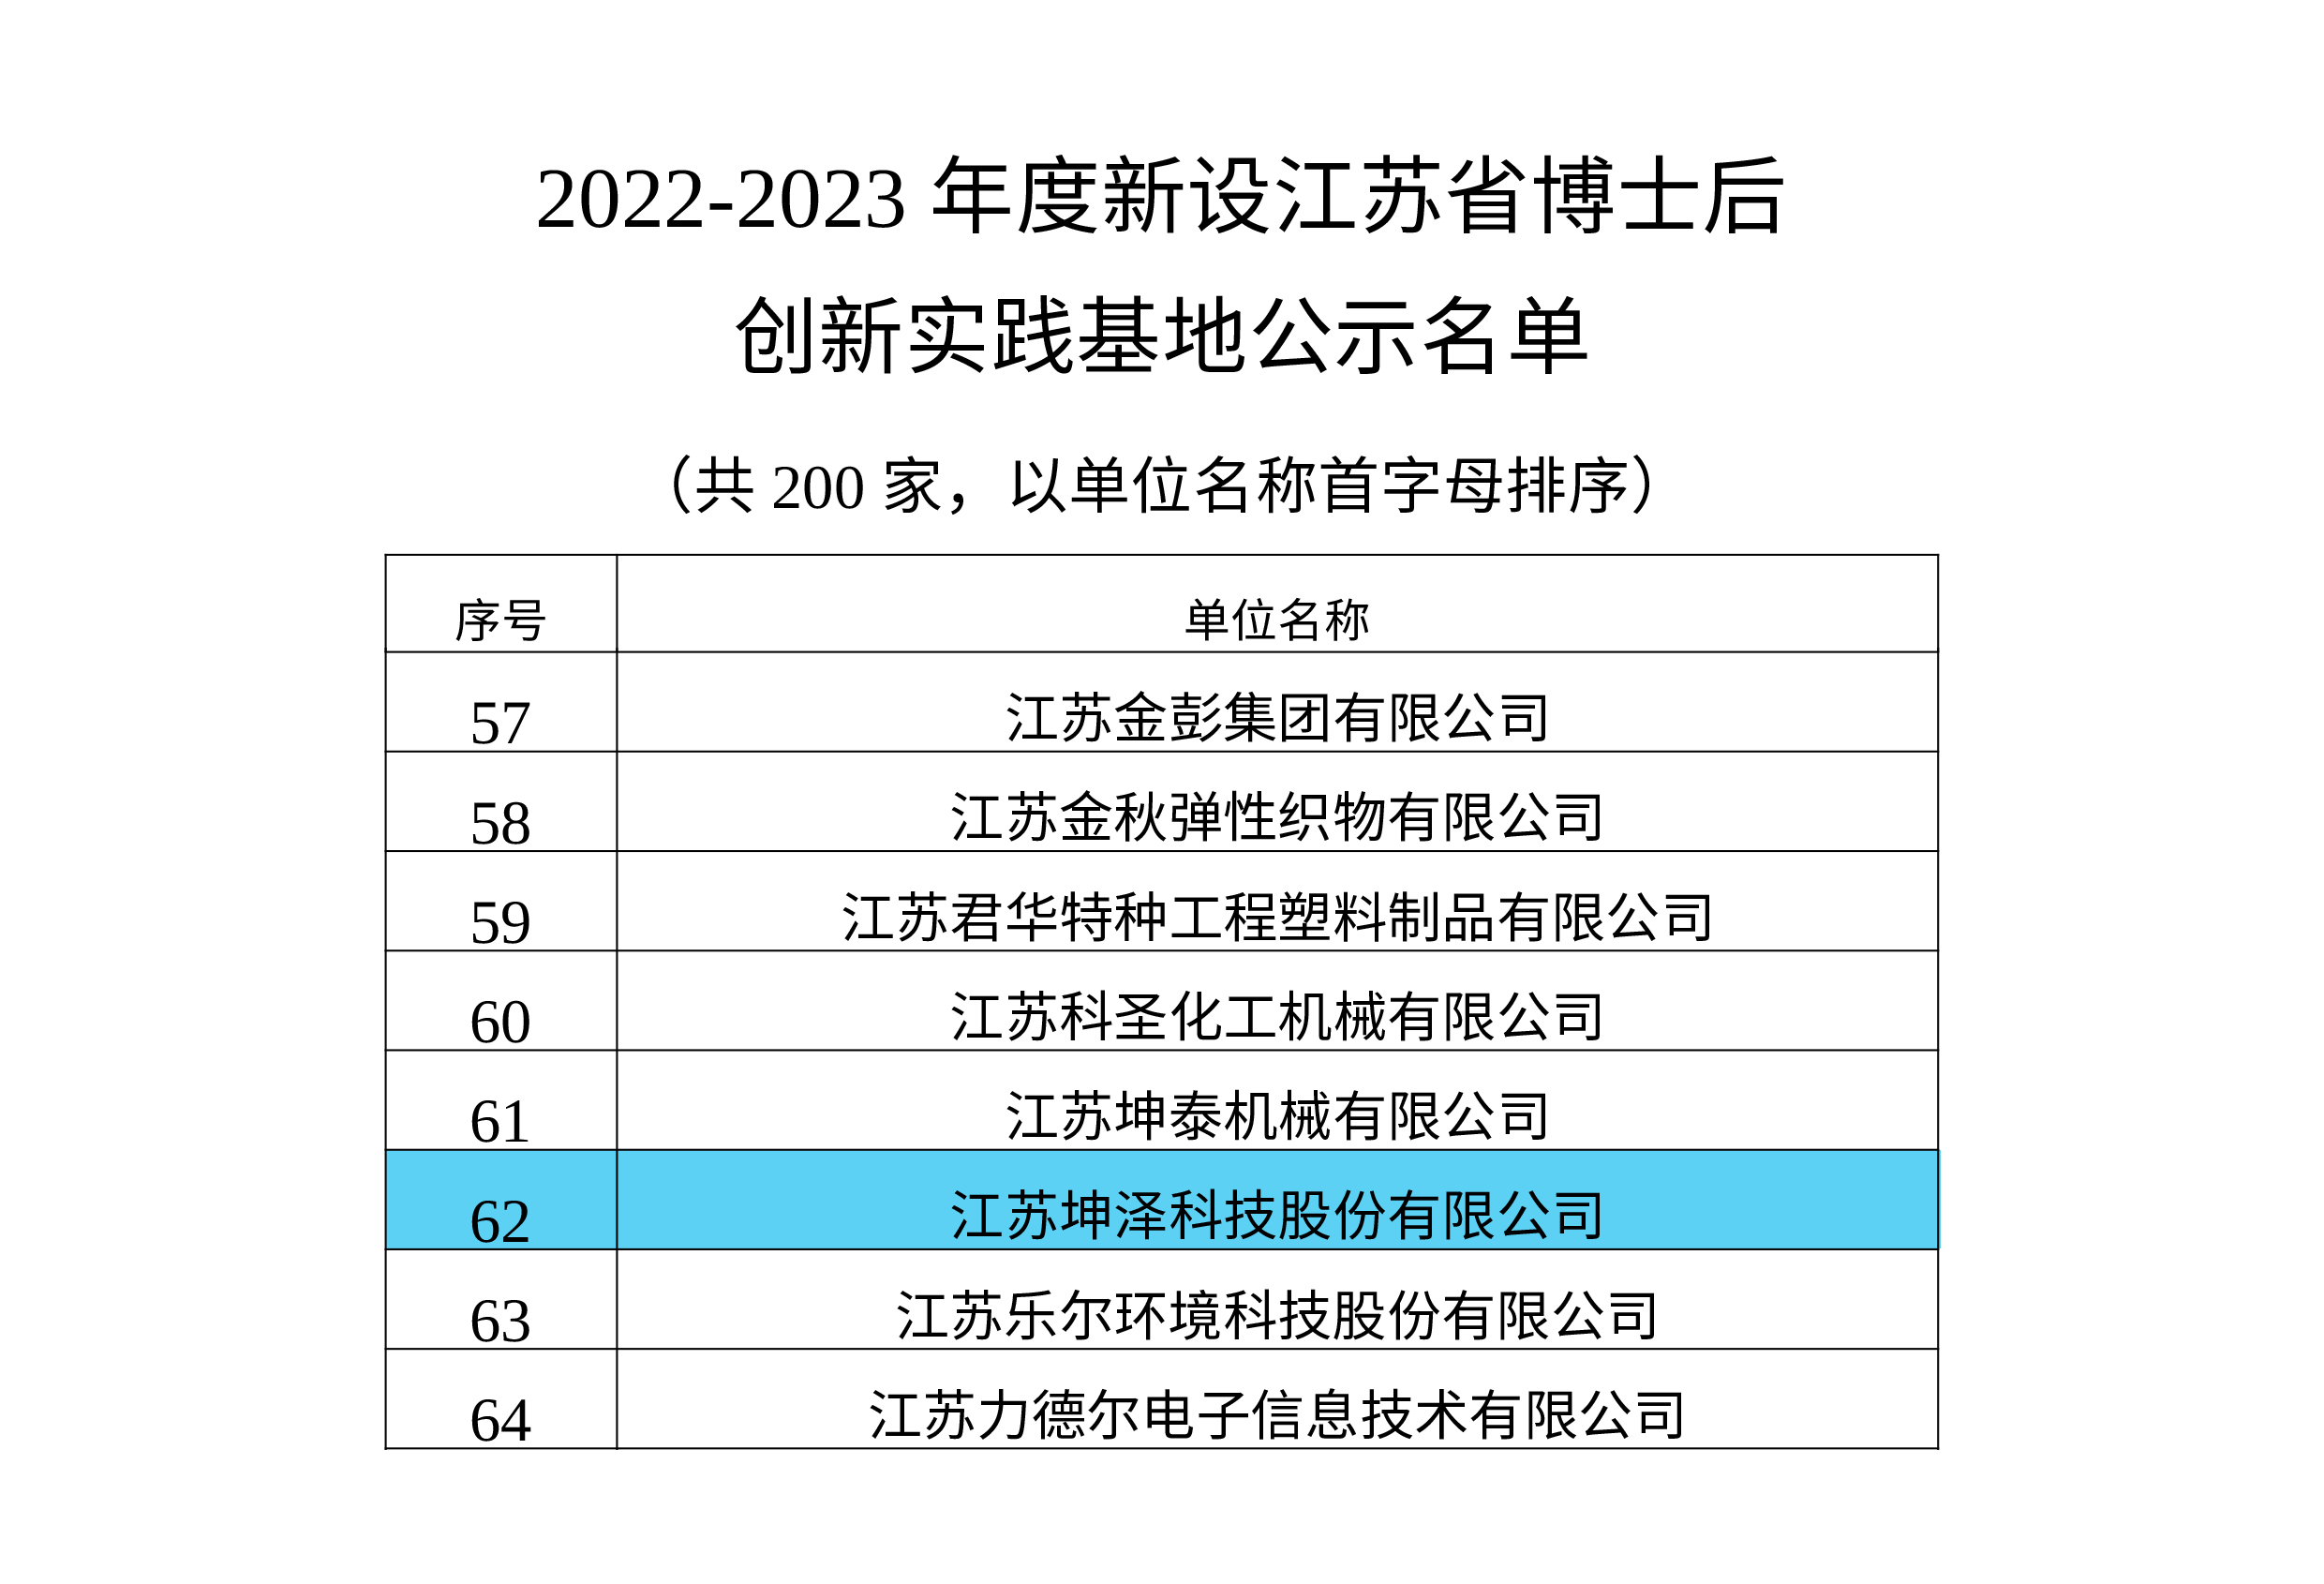 2022-2023年度新设江苏省博士后创新实践基地公示名单（共200家）-1